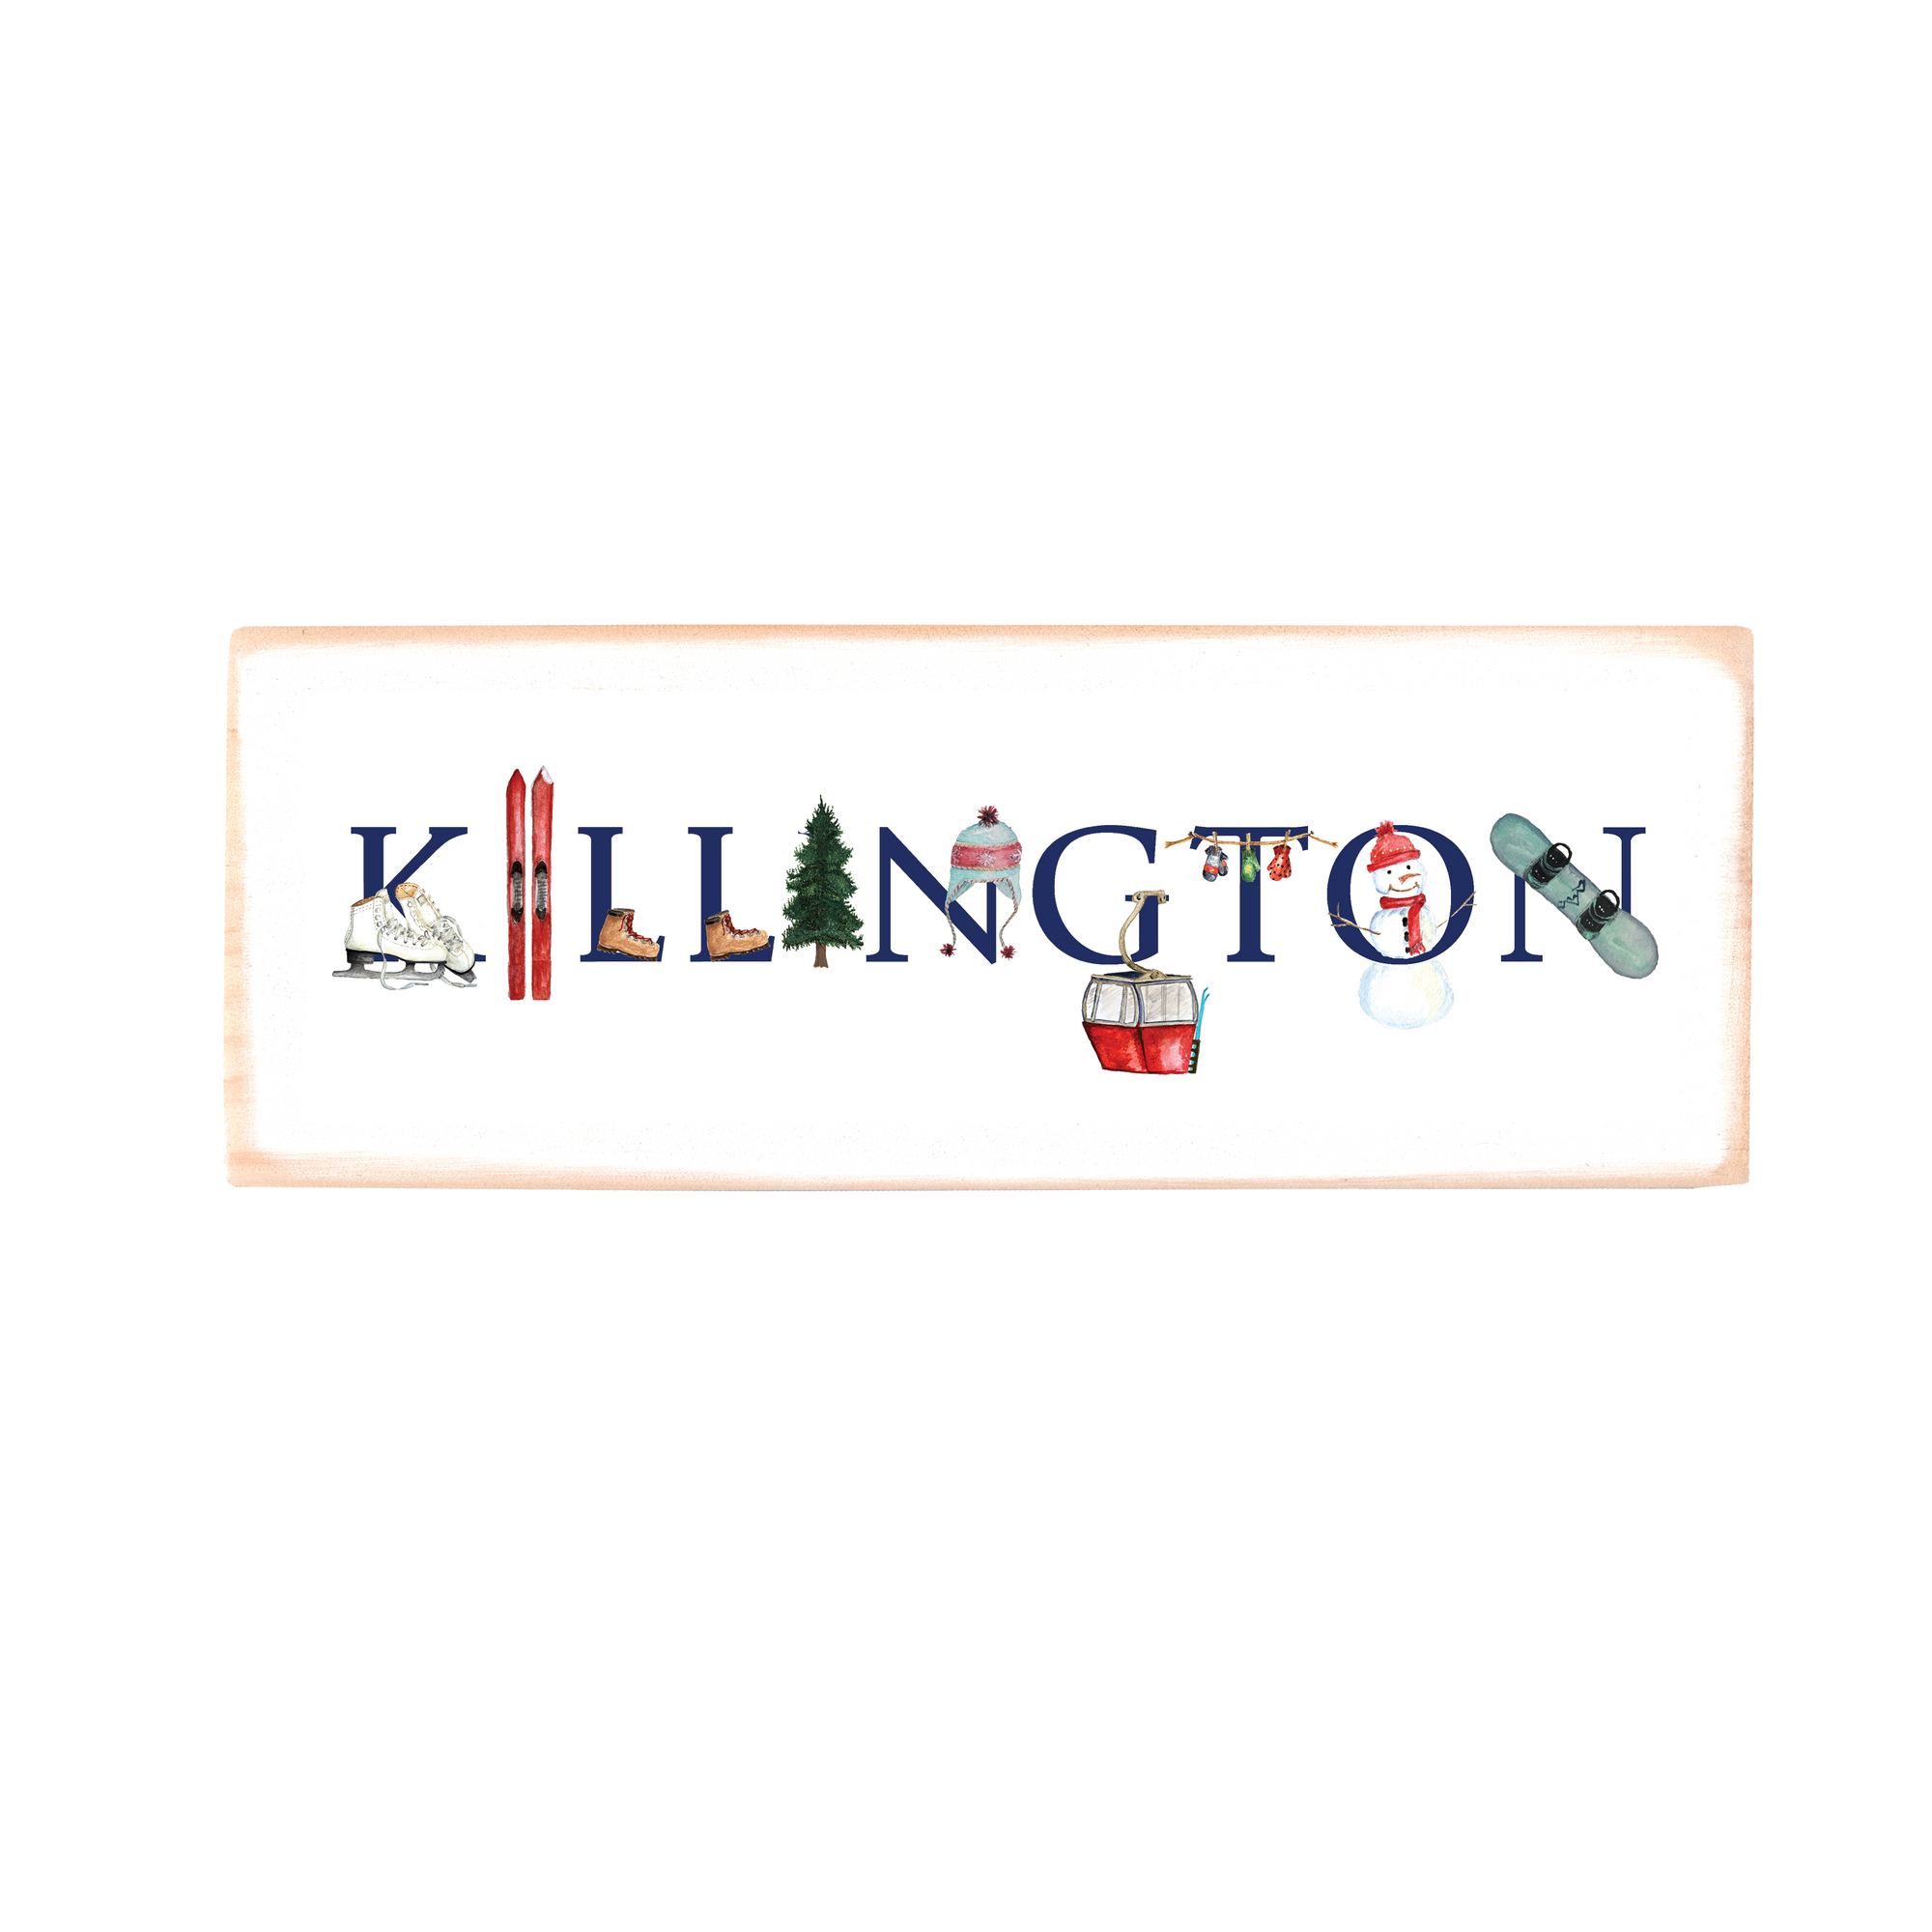 Killington rectangle wood block